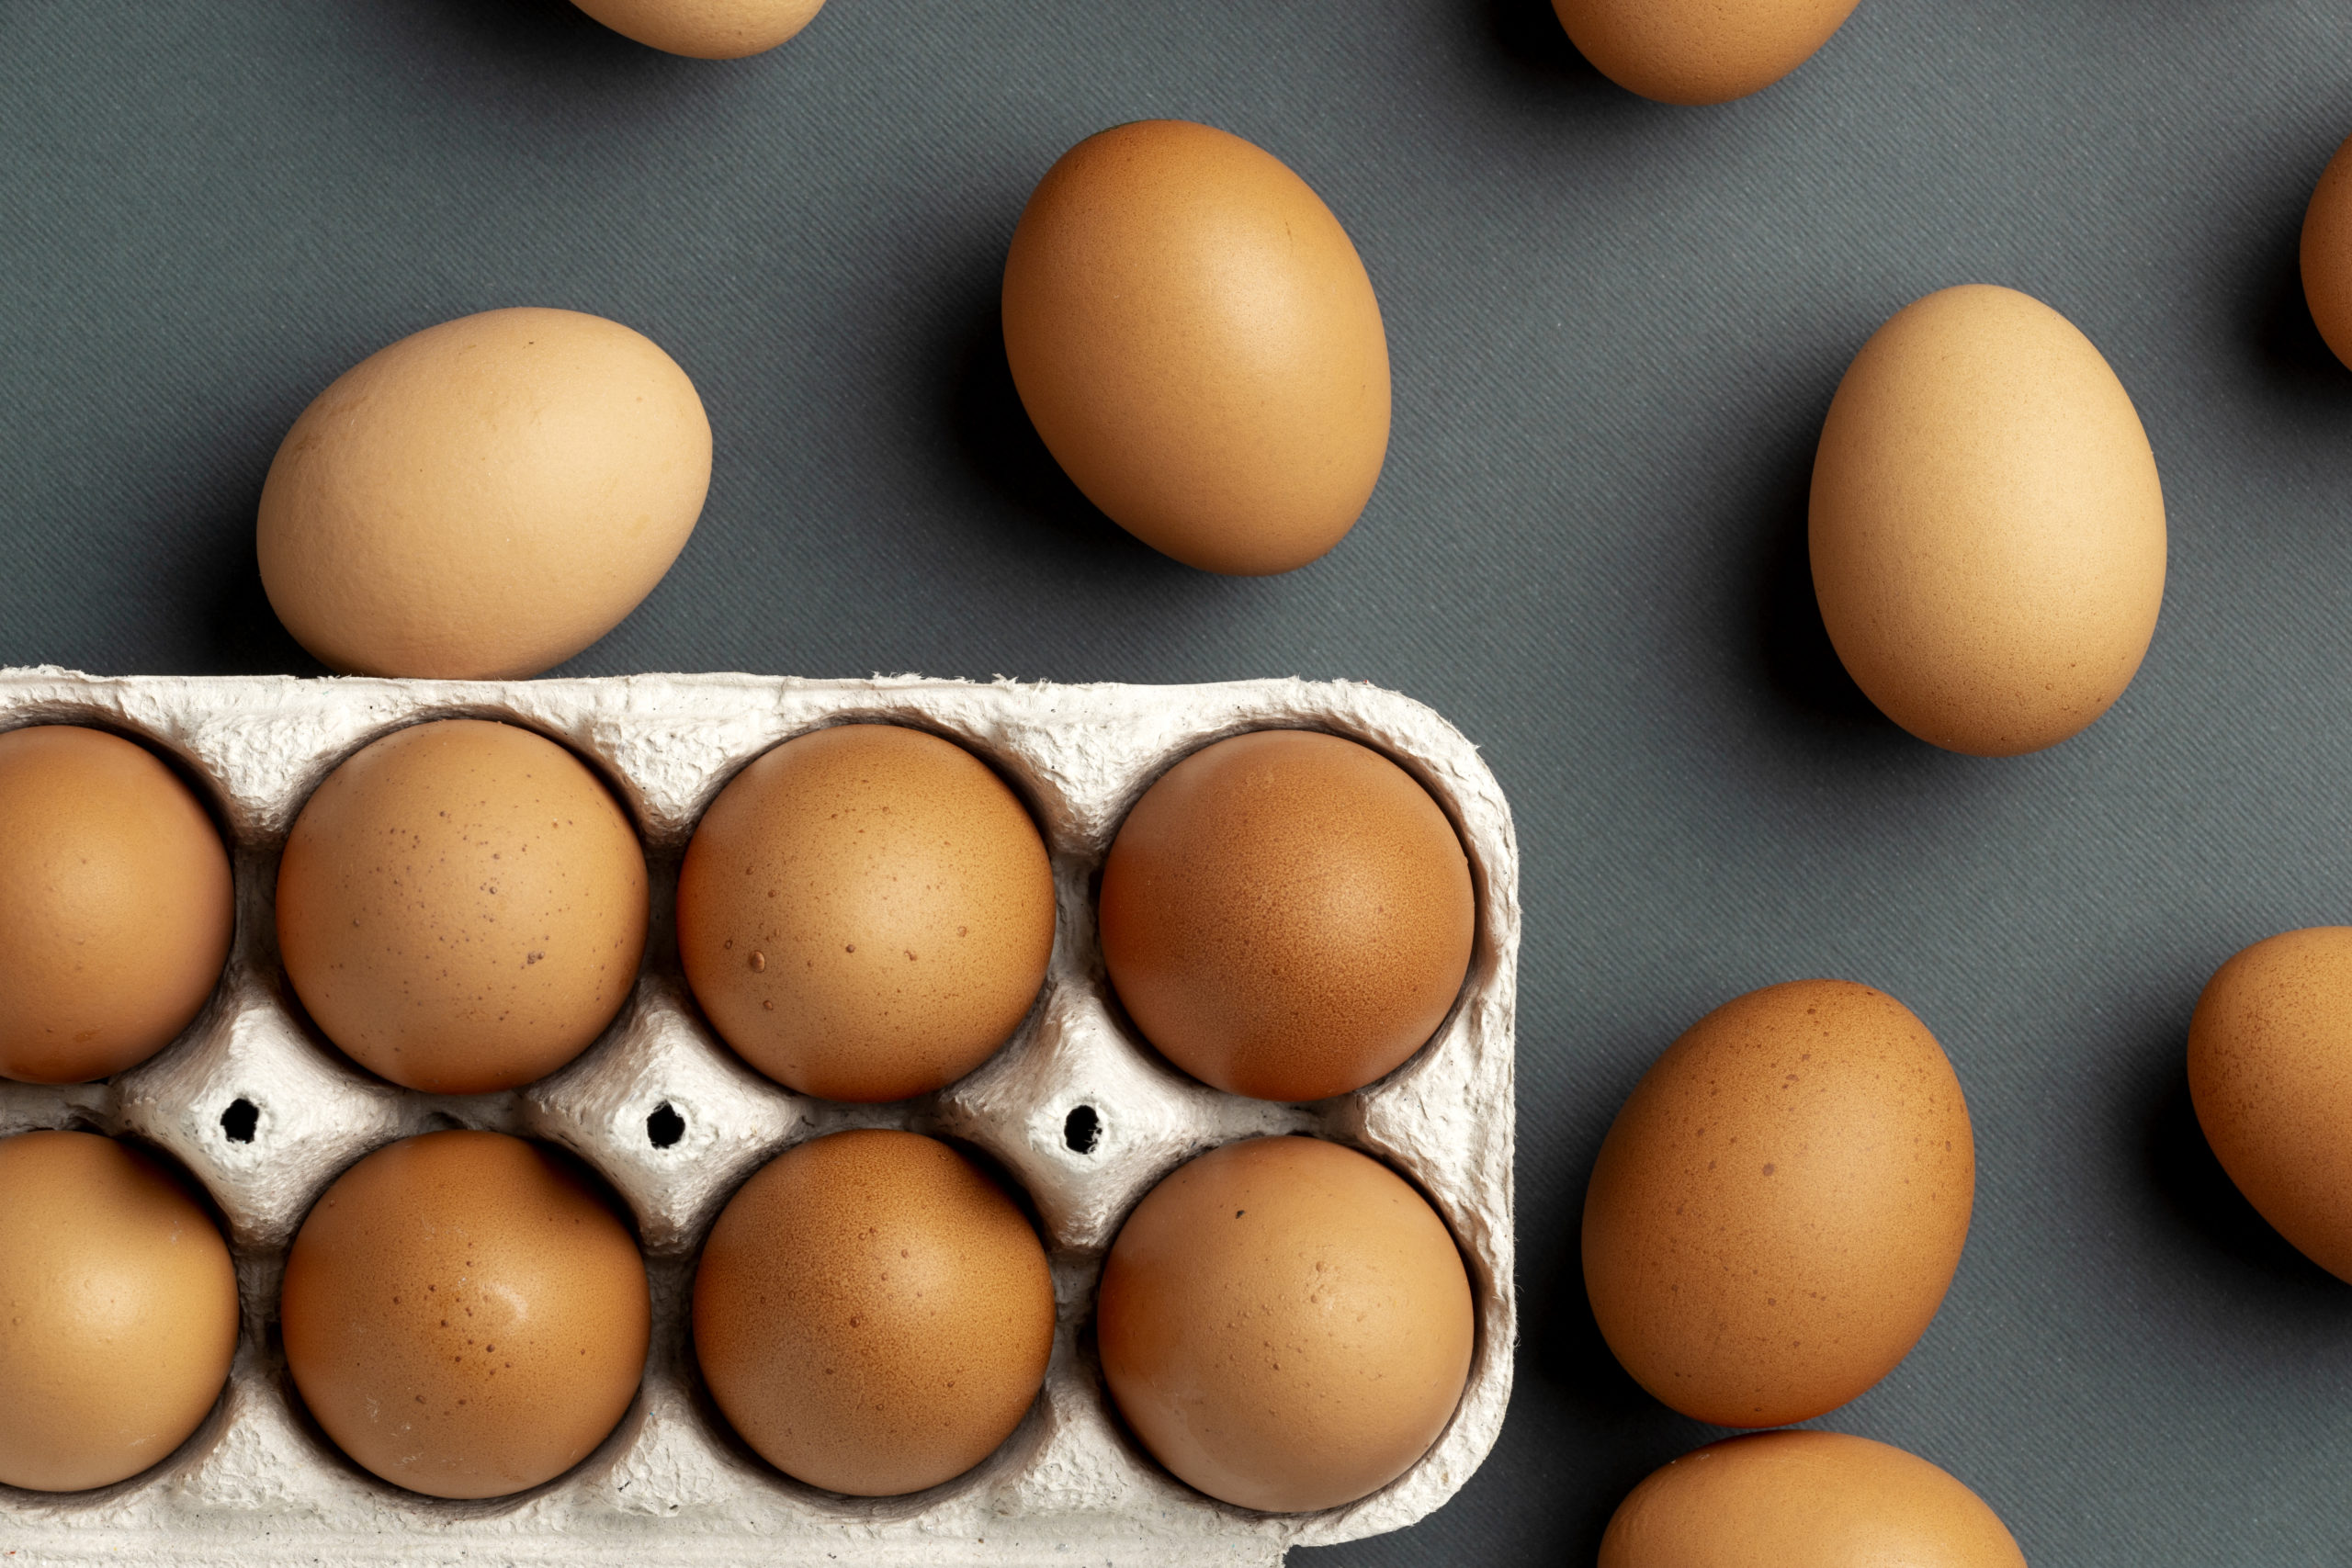 ФАС России проанализирует формирование цен на куриные яйца